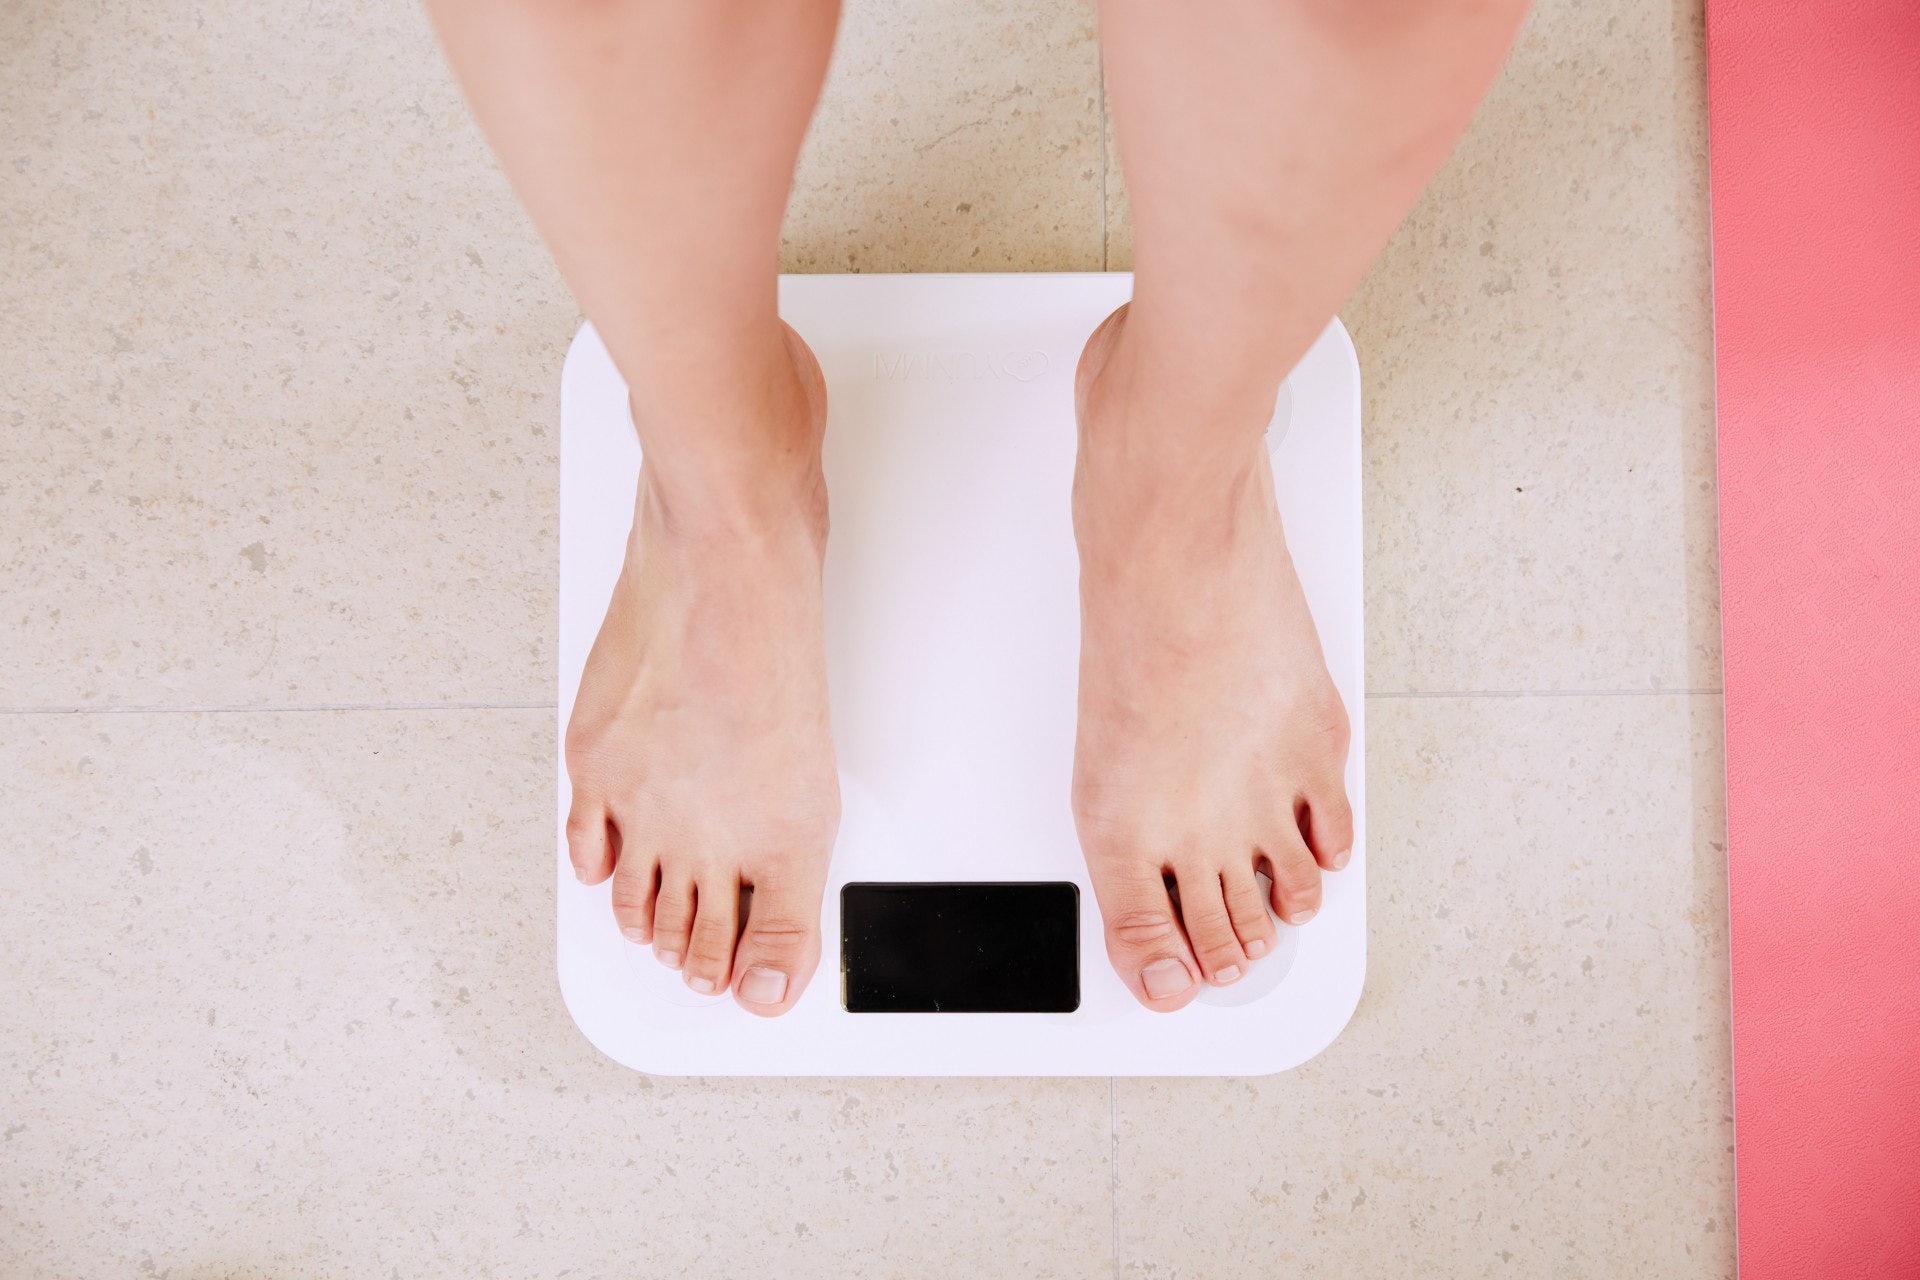 研究強調，志願者都身體健康，也能於實行ADF的一個月中平均減去7磅，但它是一種極端的飲食法。如果讀者有所疑惑，必須咨詢醫生意見或使用傳統的減肥原則便好。（Photo by I Yunmai on Unsplash）